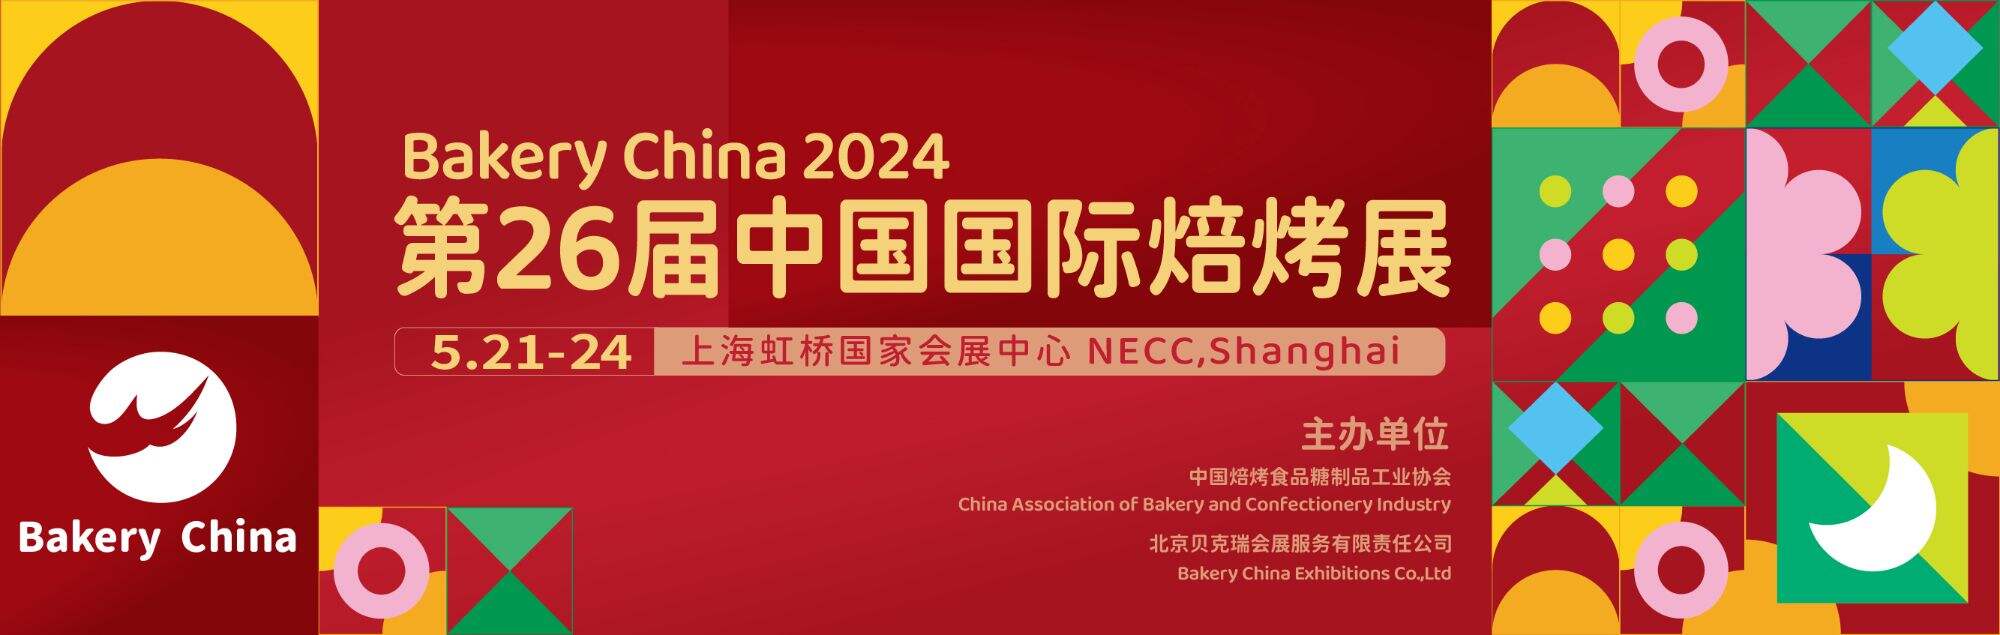 Prévia da exposição: Bakery China 2024, 21 a 24 de maio em Xangai